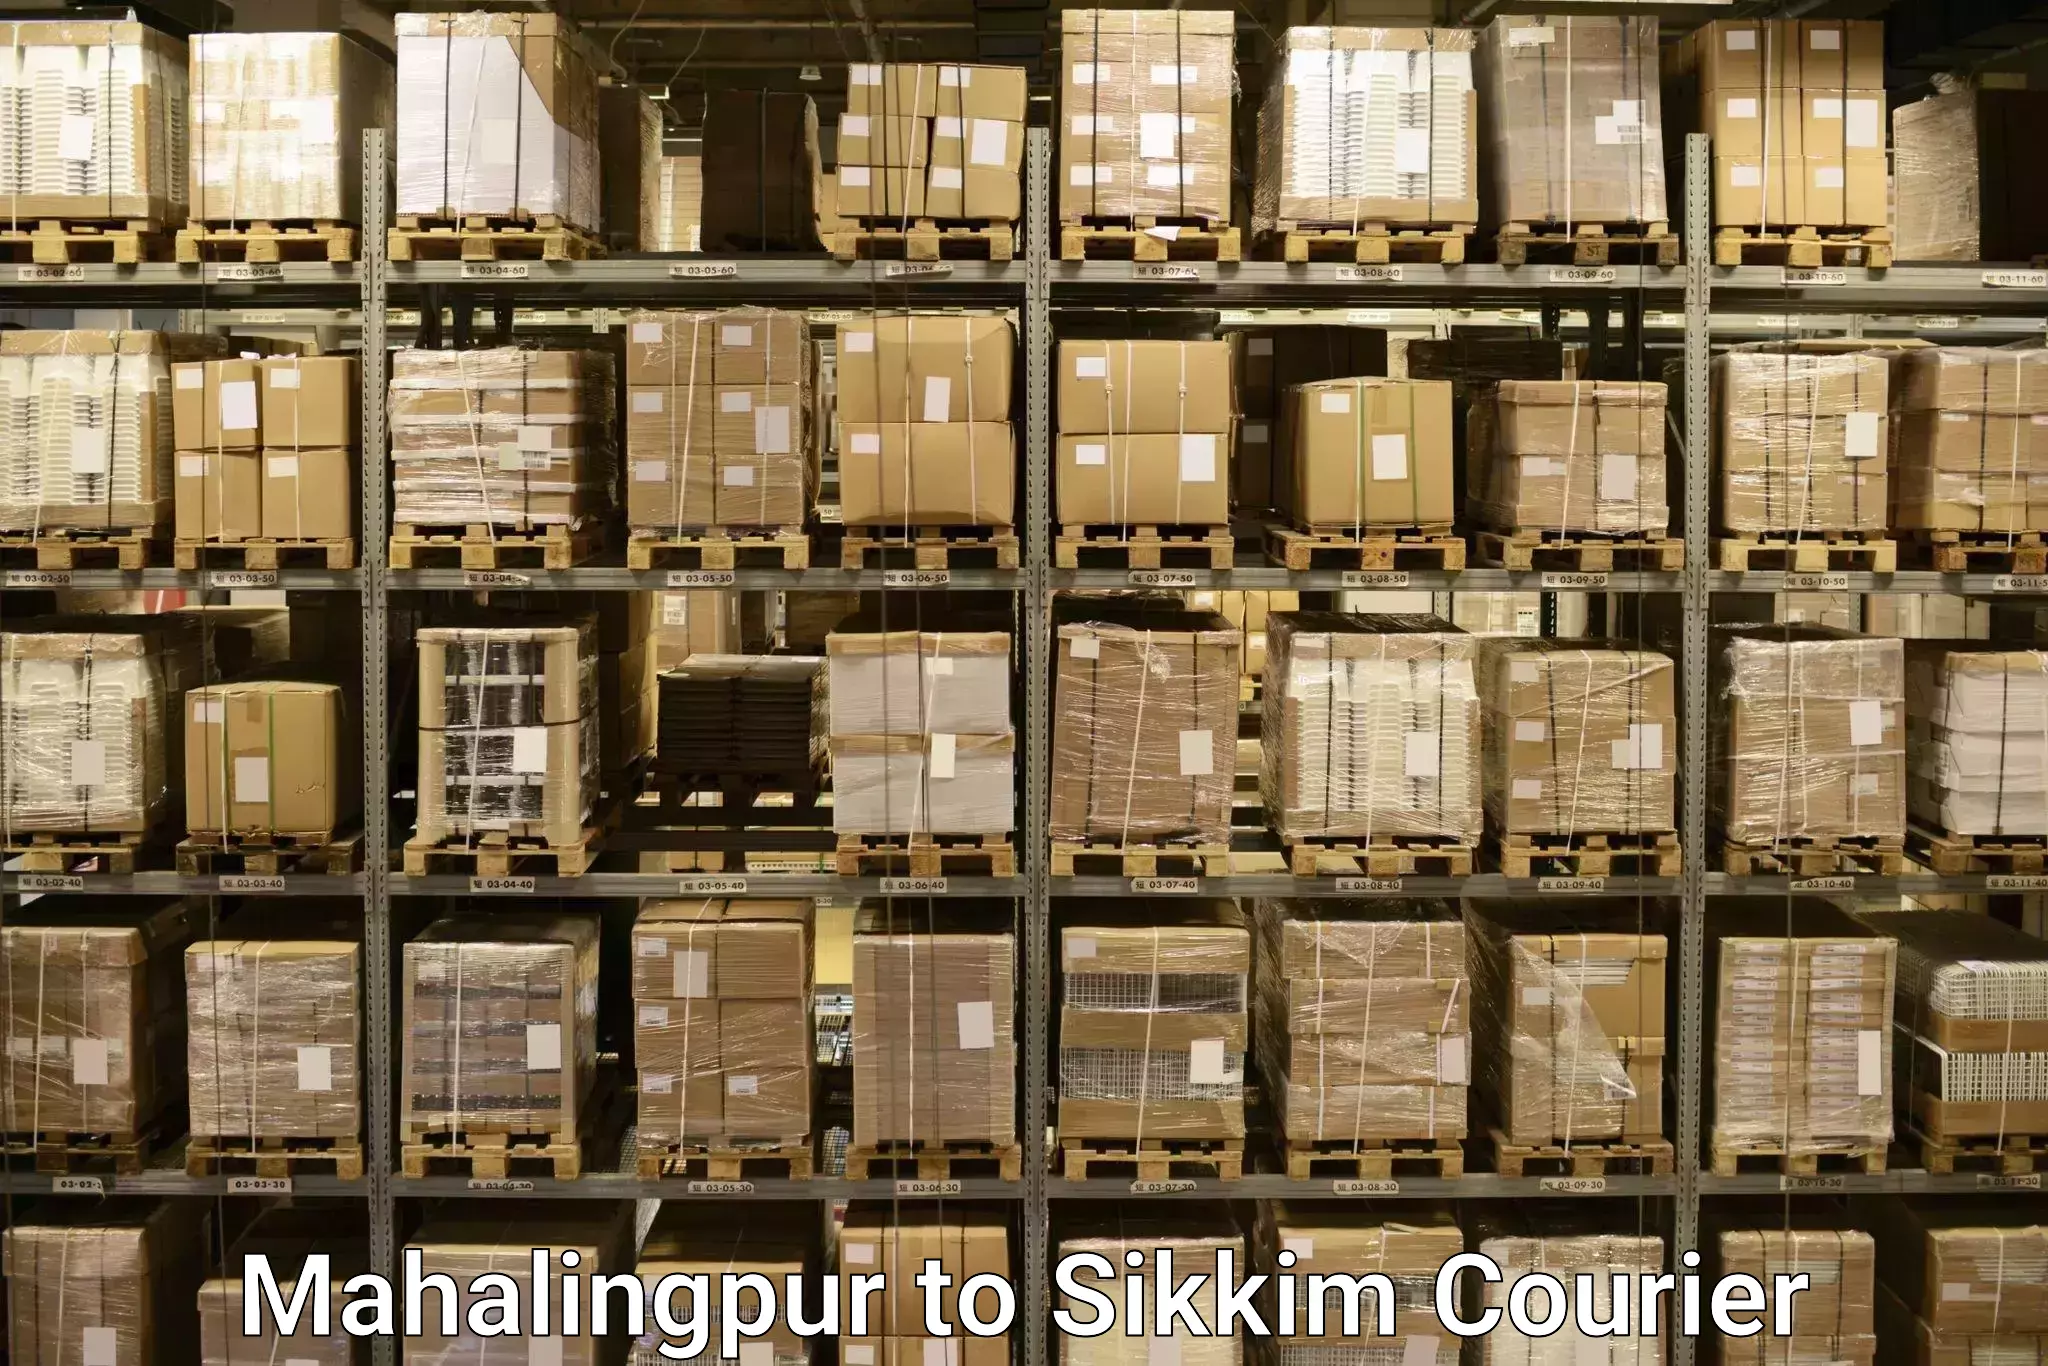 Baggage shipping experts Mahalingpur to Pelling